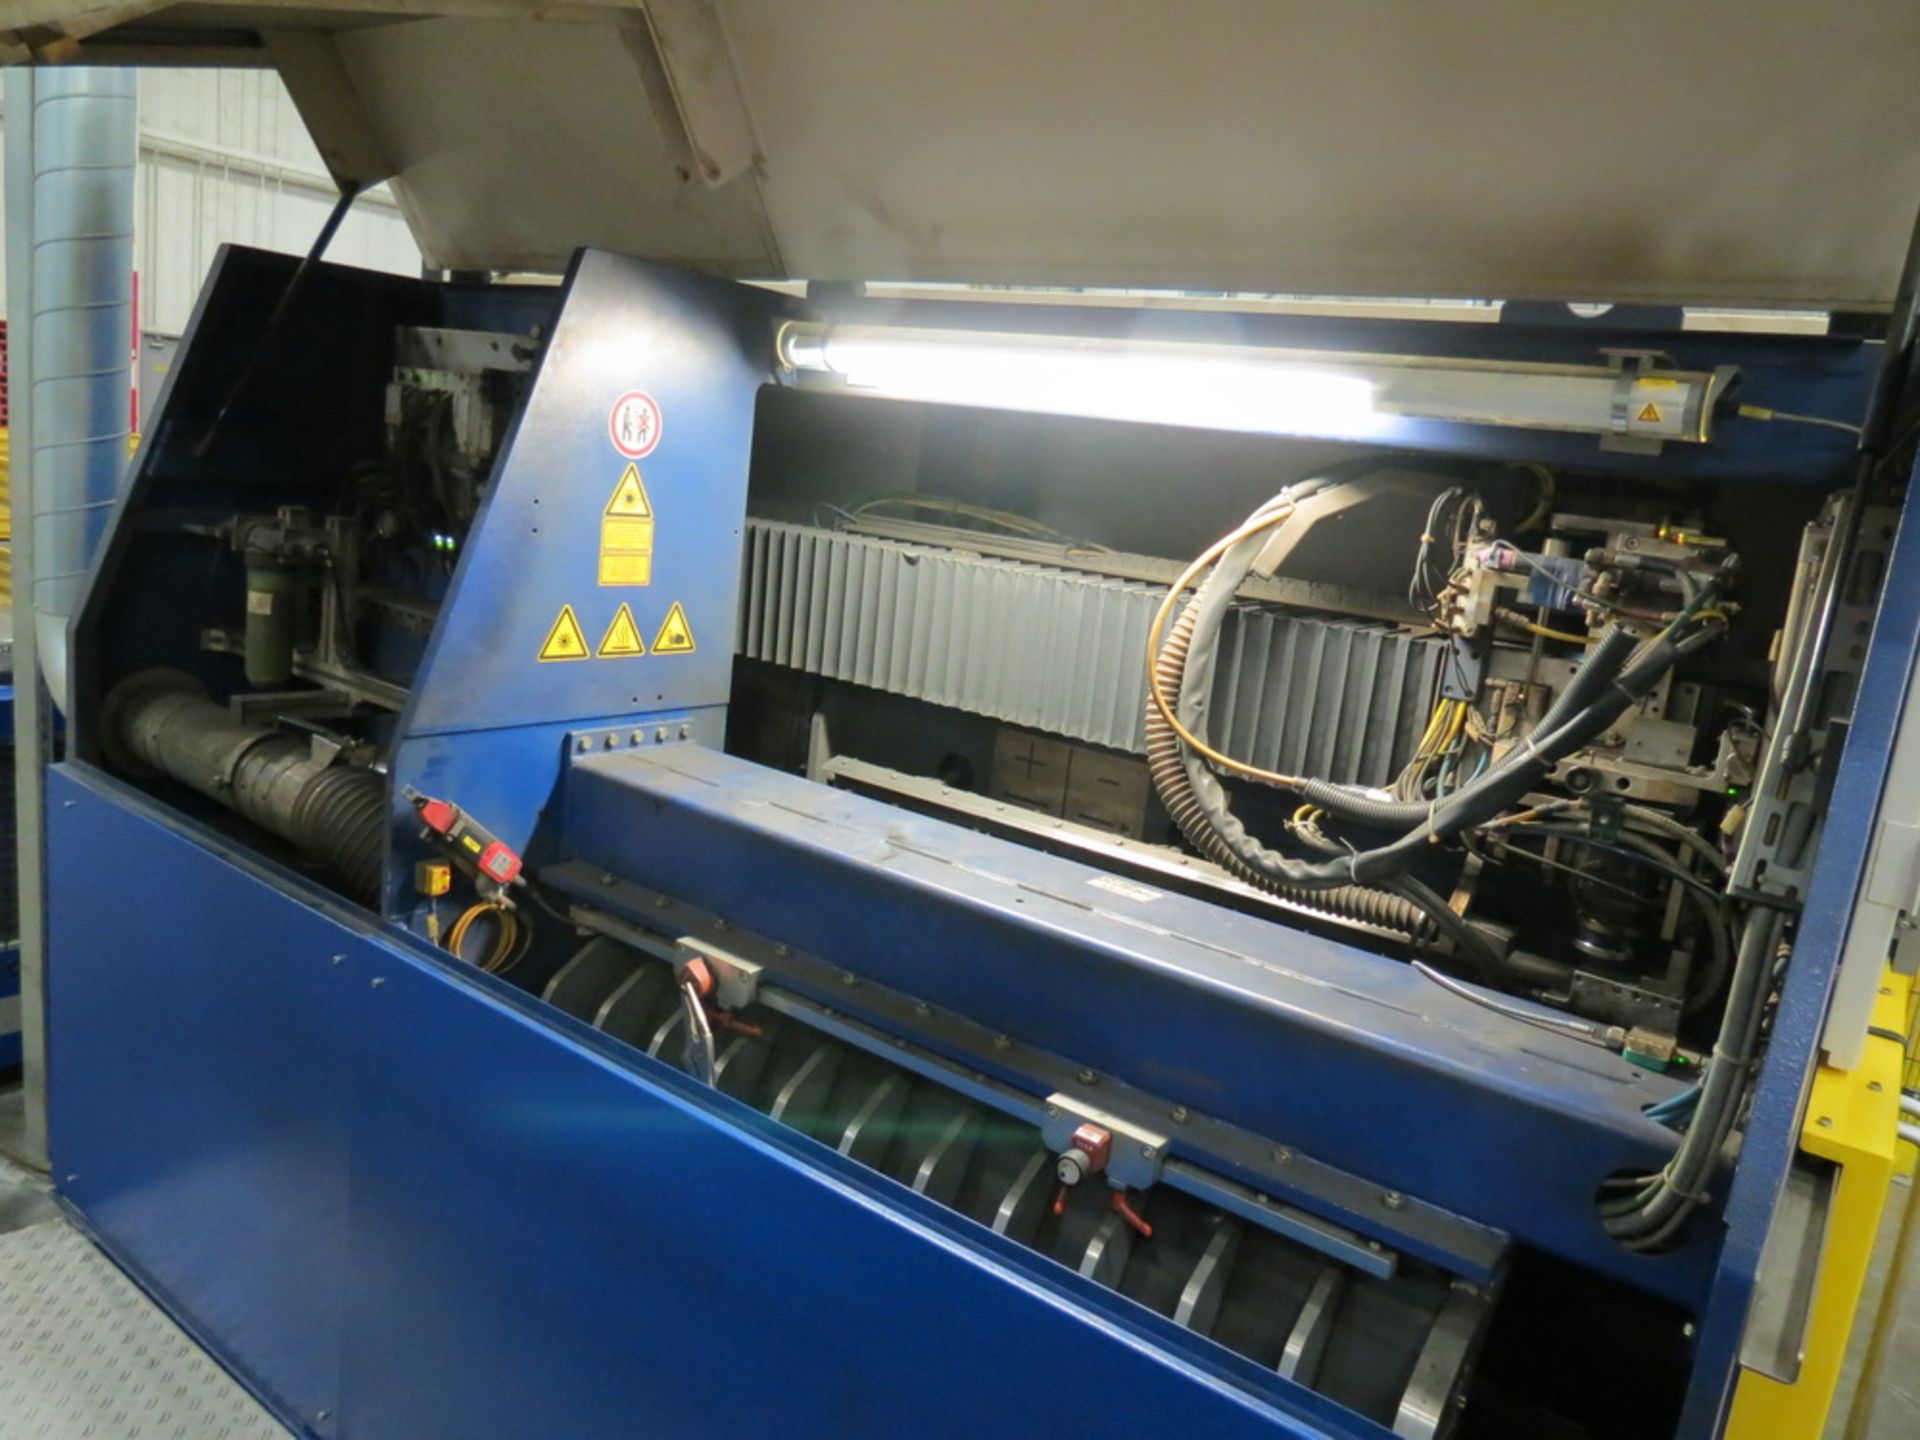 2014 Weil Technology Flexmaster 400/1250 Seam Welding Machine - Image 8 of 20